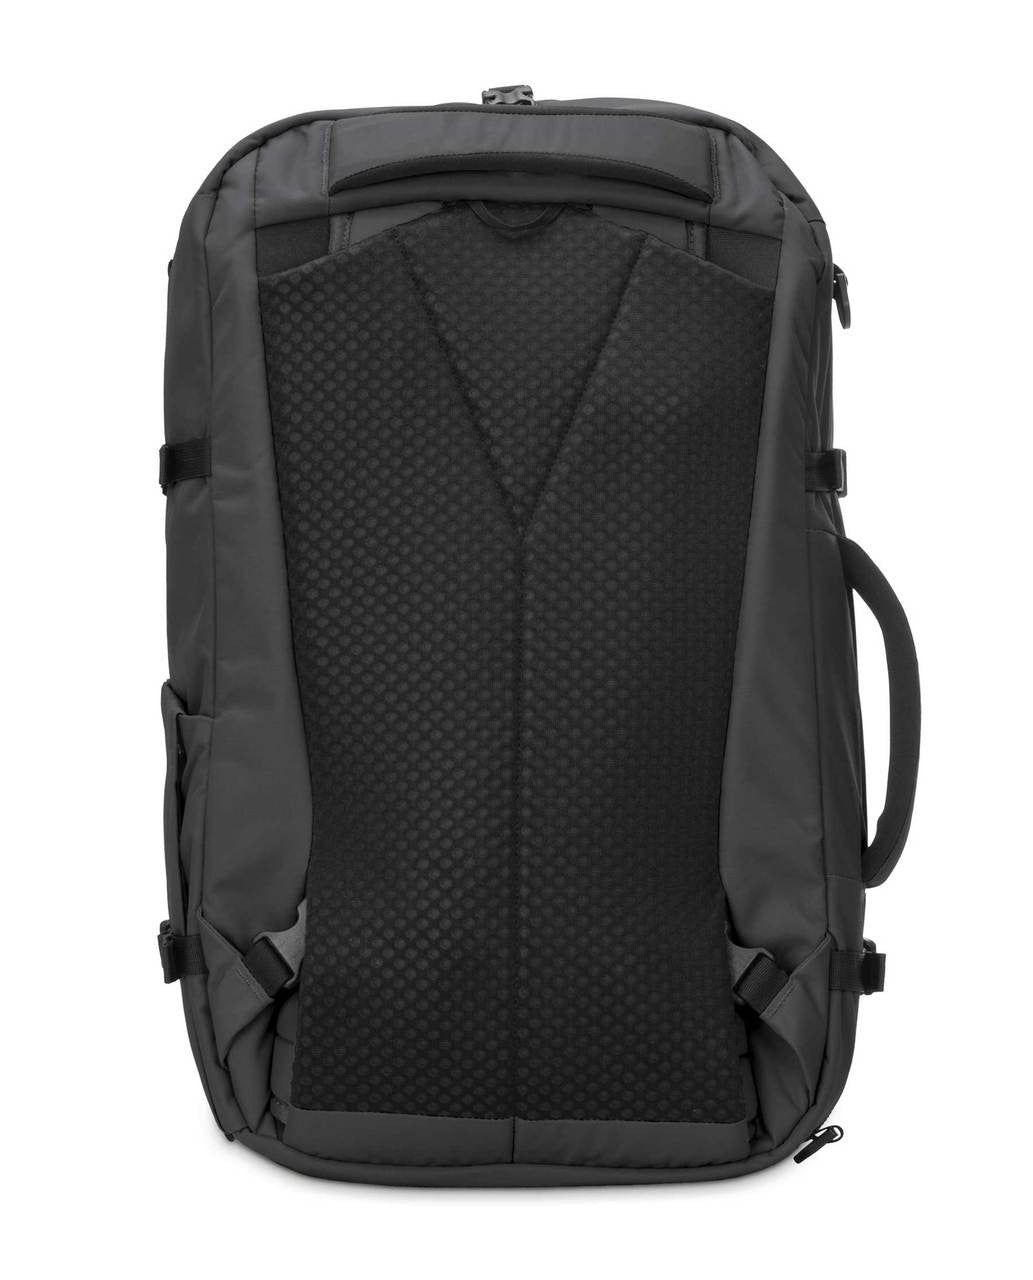 Pacsafe Vibe 40 large backpack, black back